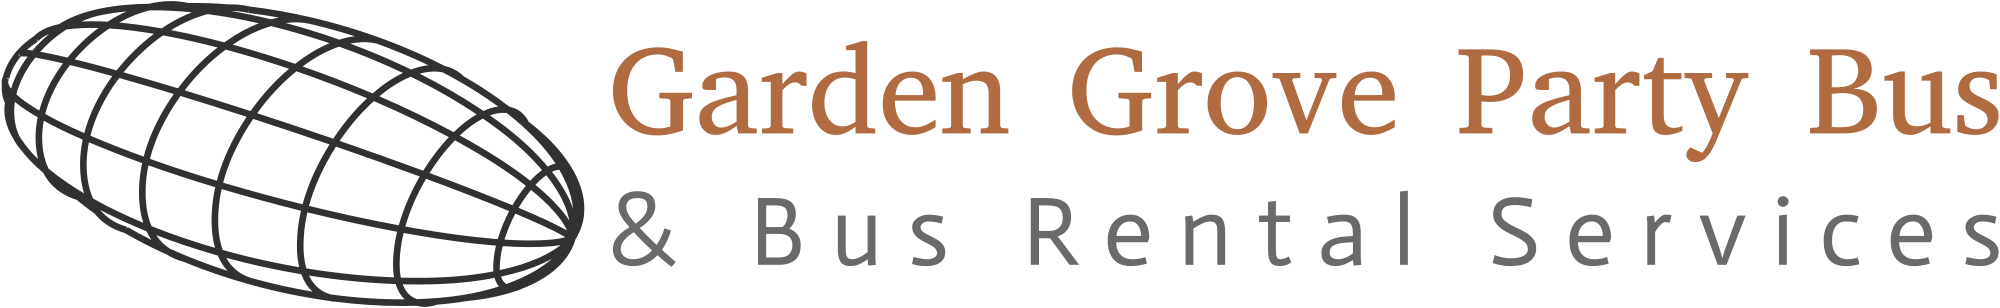 Party Bus Garden Grove logo